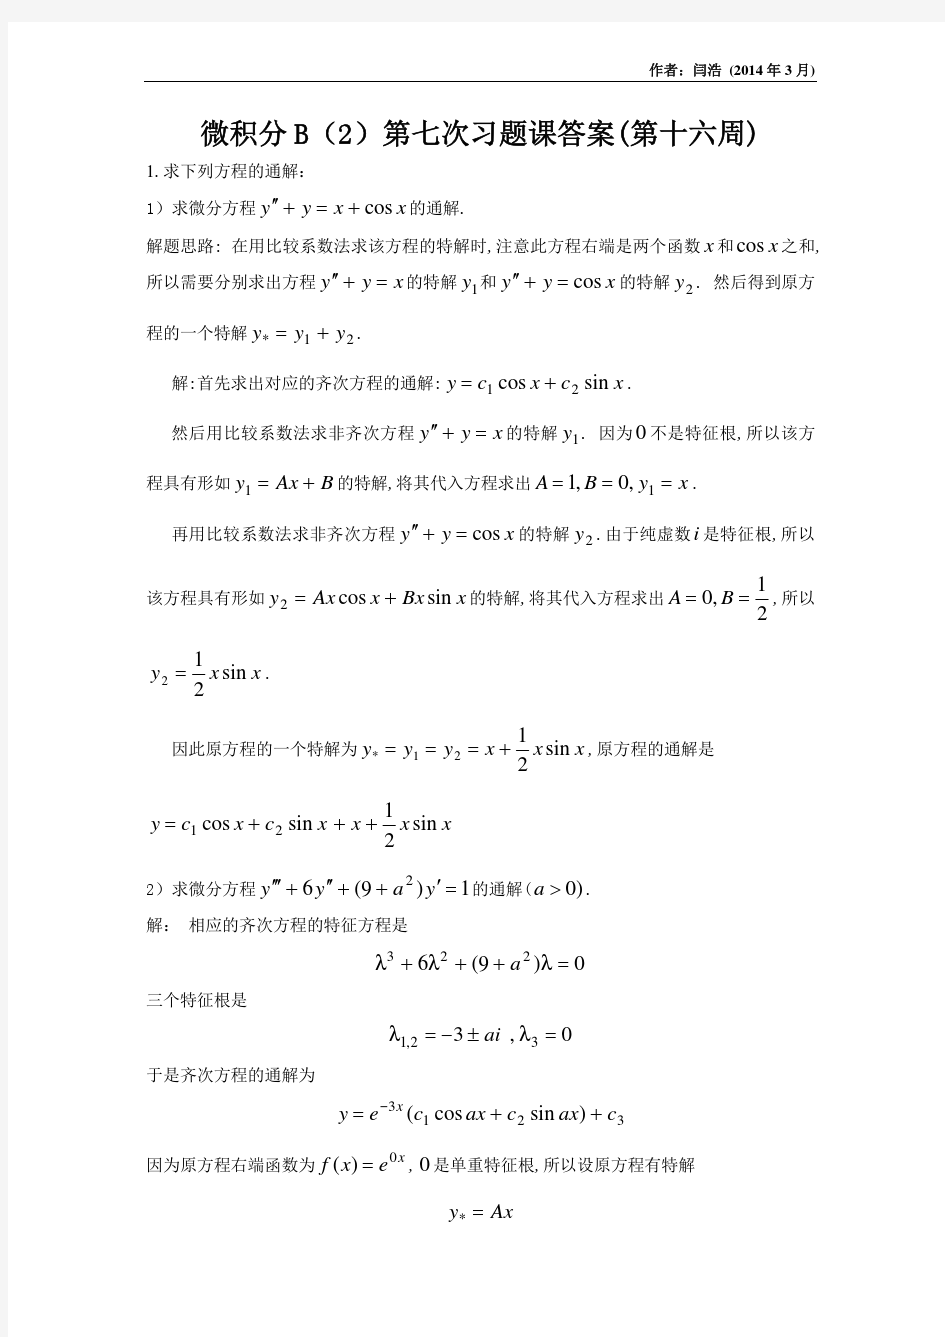 清华大学微积分B(2)第7次习题课答案(非齐次方程的通解特解欧拉方程朗斯基行列式)